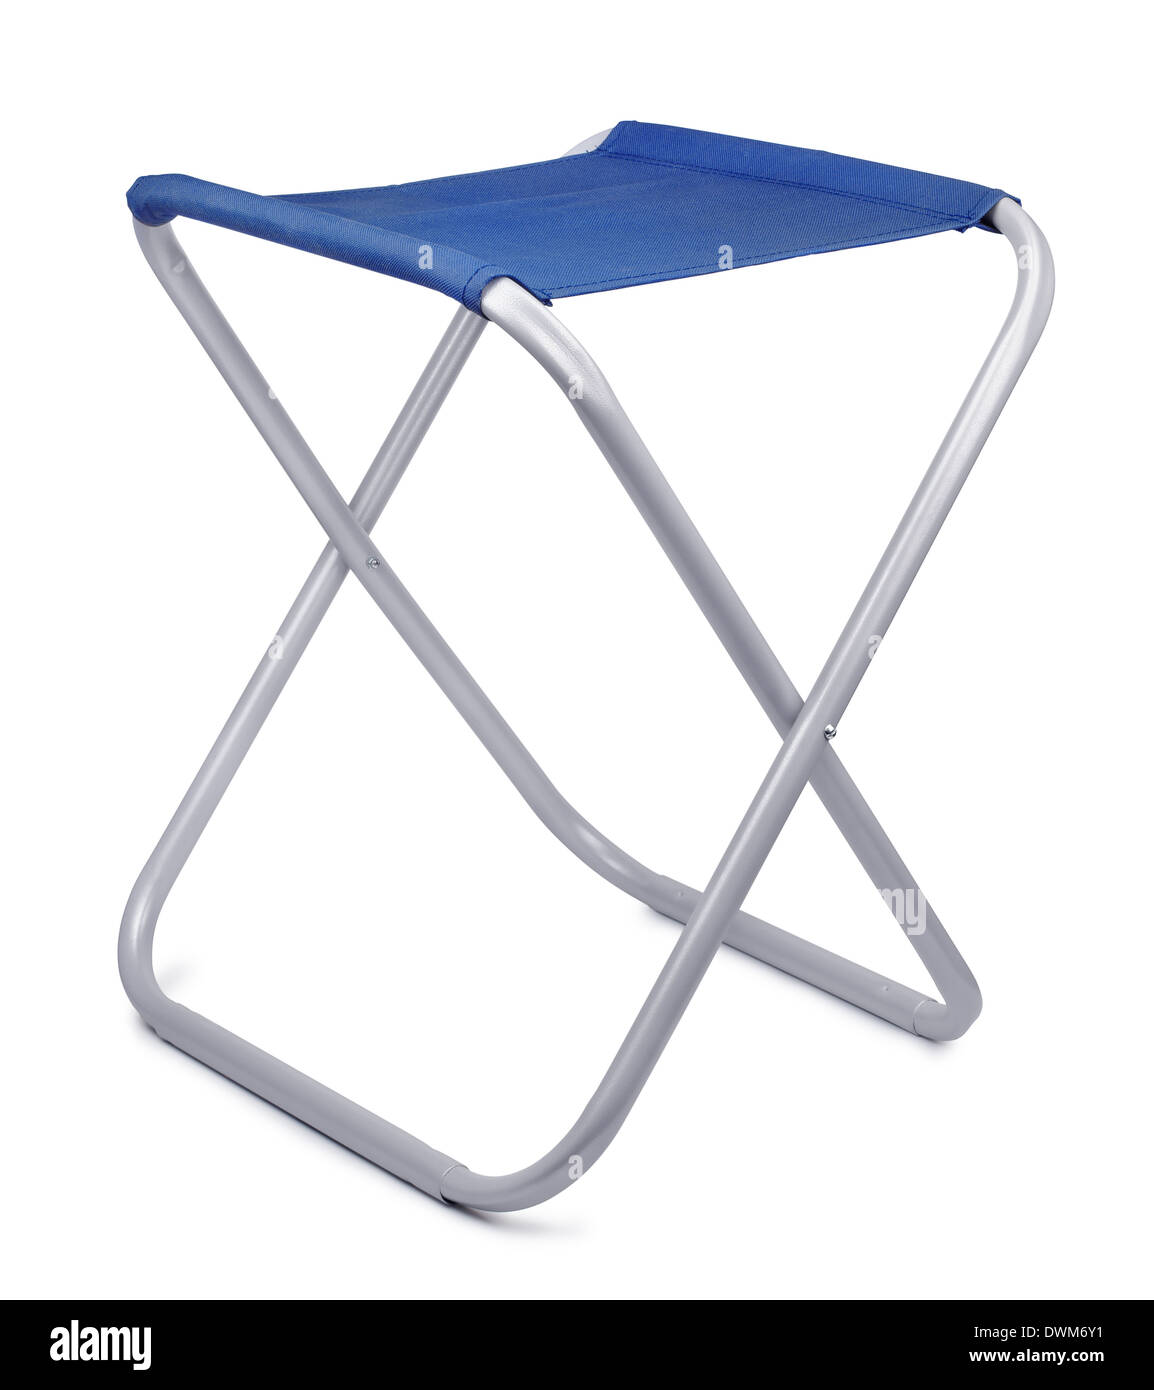 Folding camping stool isolated on white Stock Photo